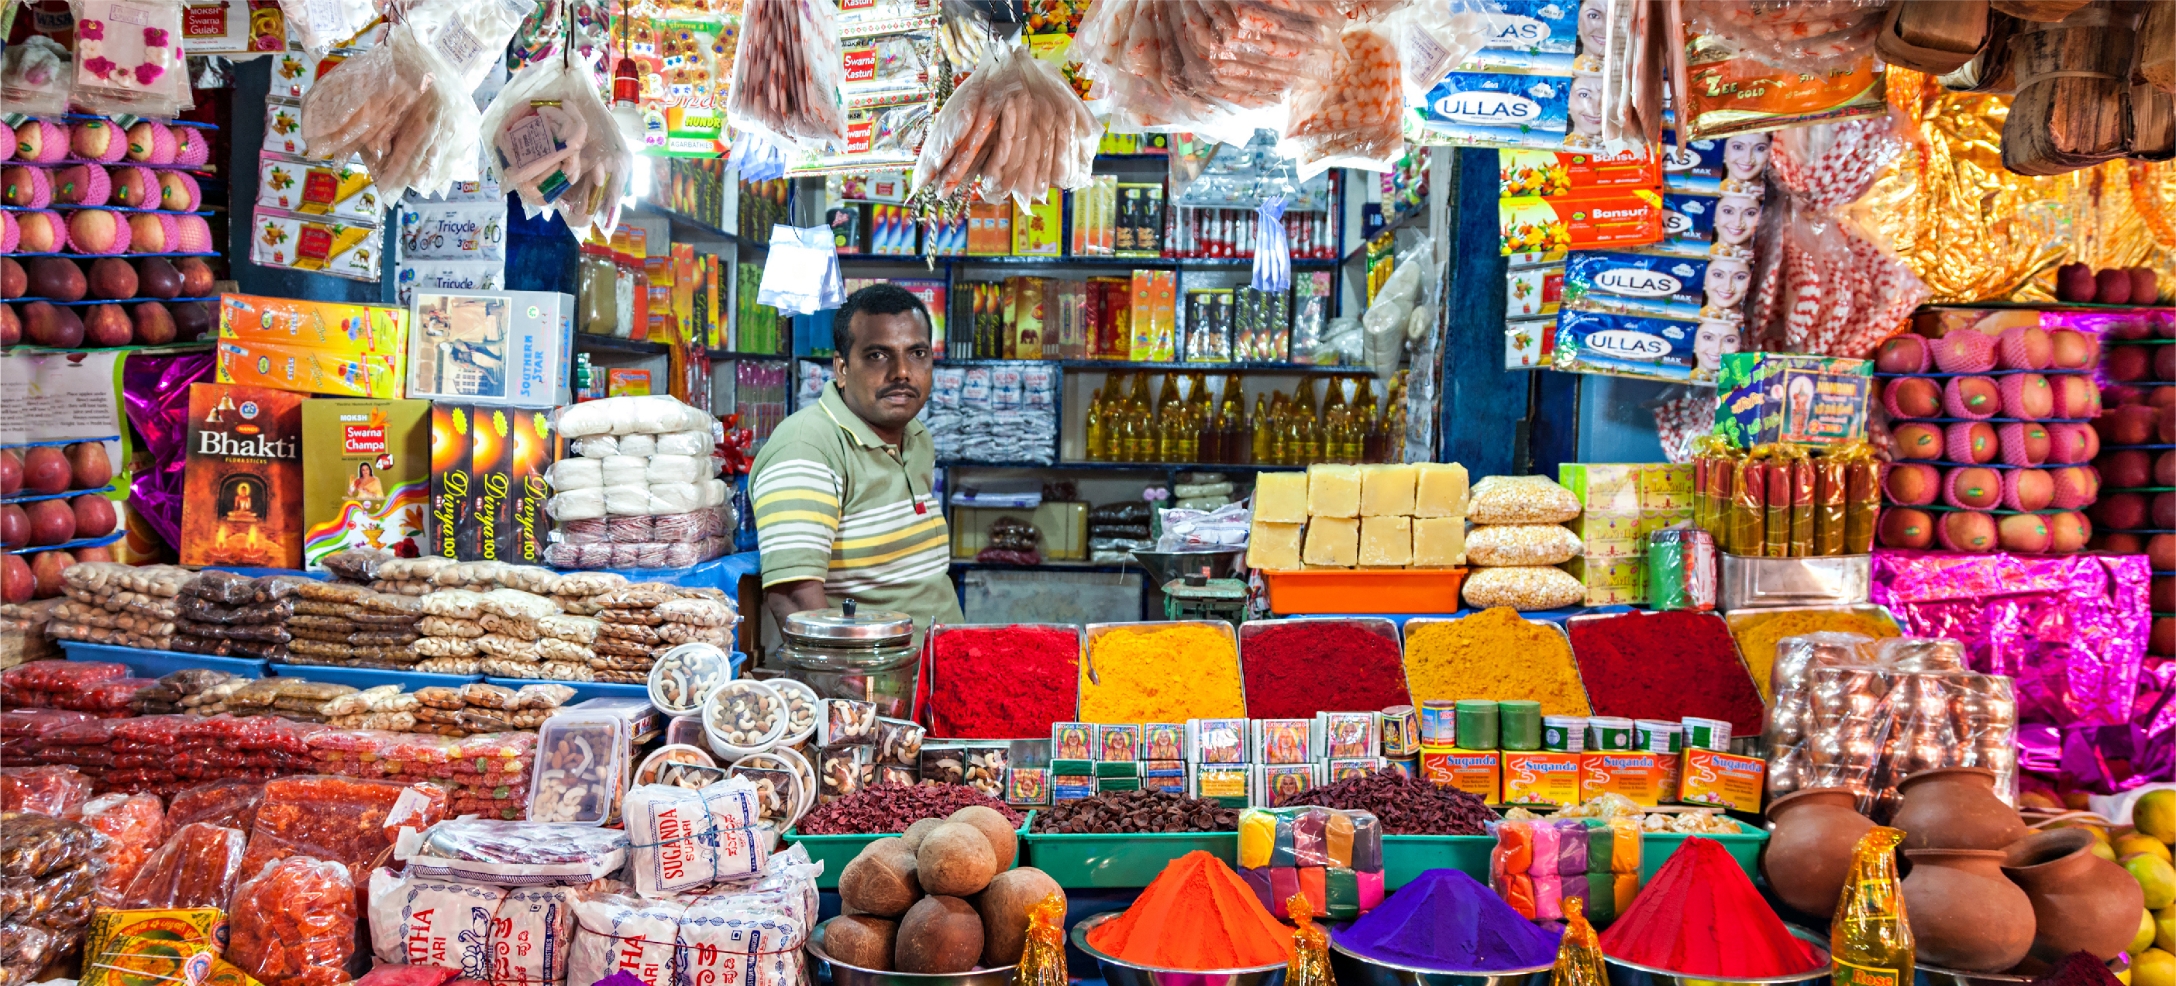 merchant standing in his shop